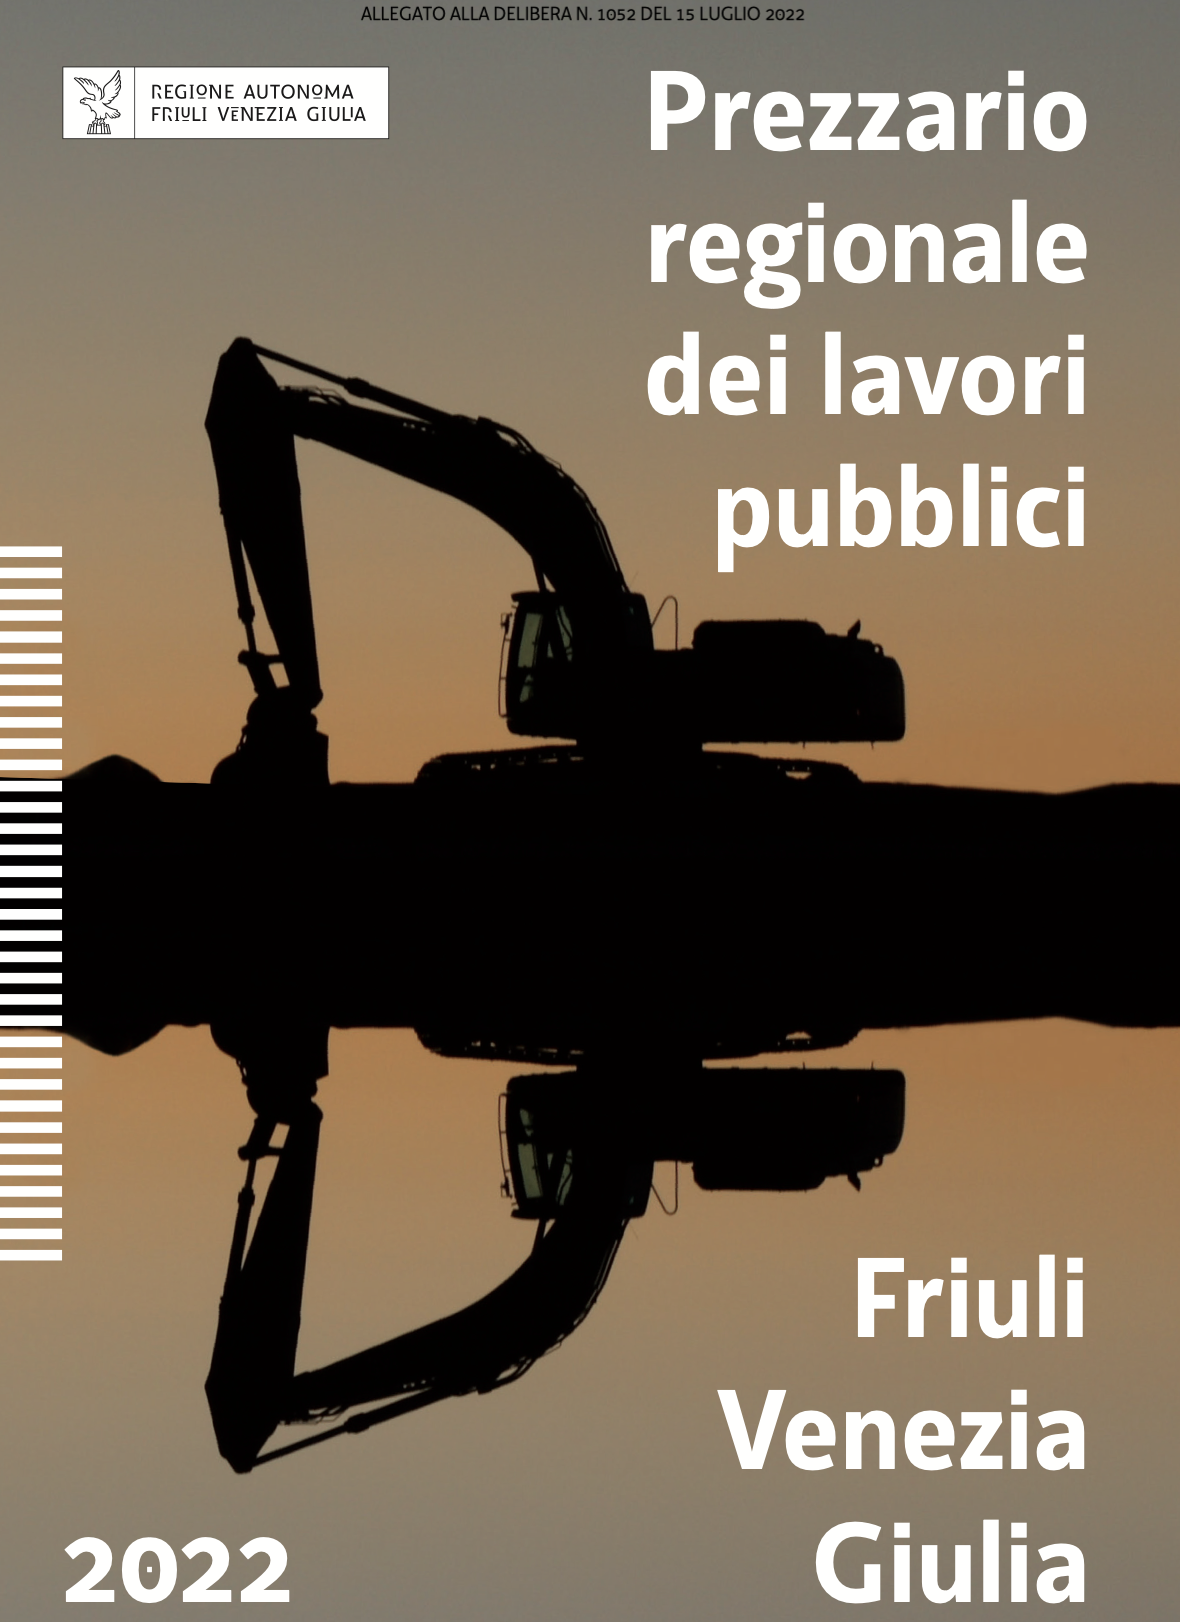 Il nuovo prezzario regionale dei lavori pubblici FVG 2022